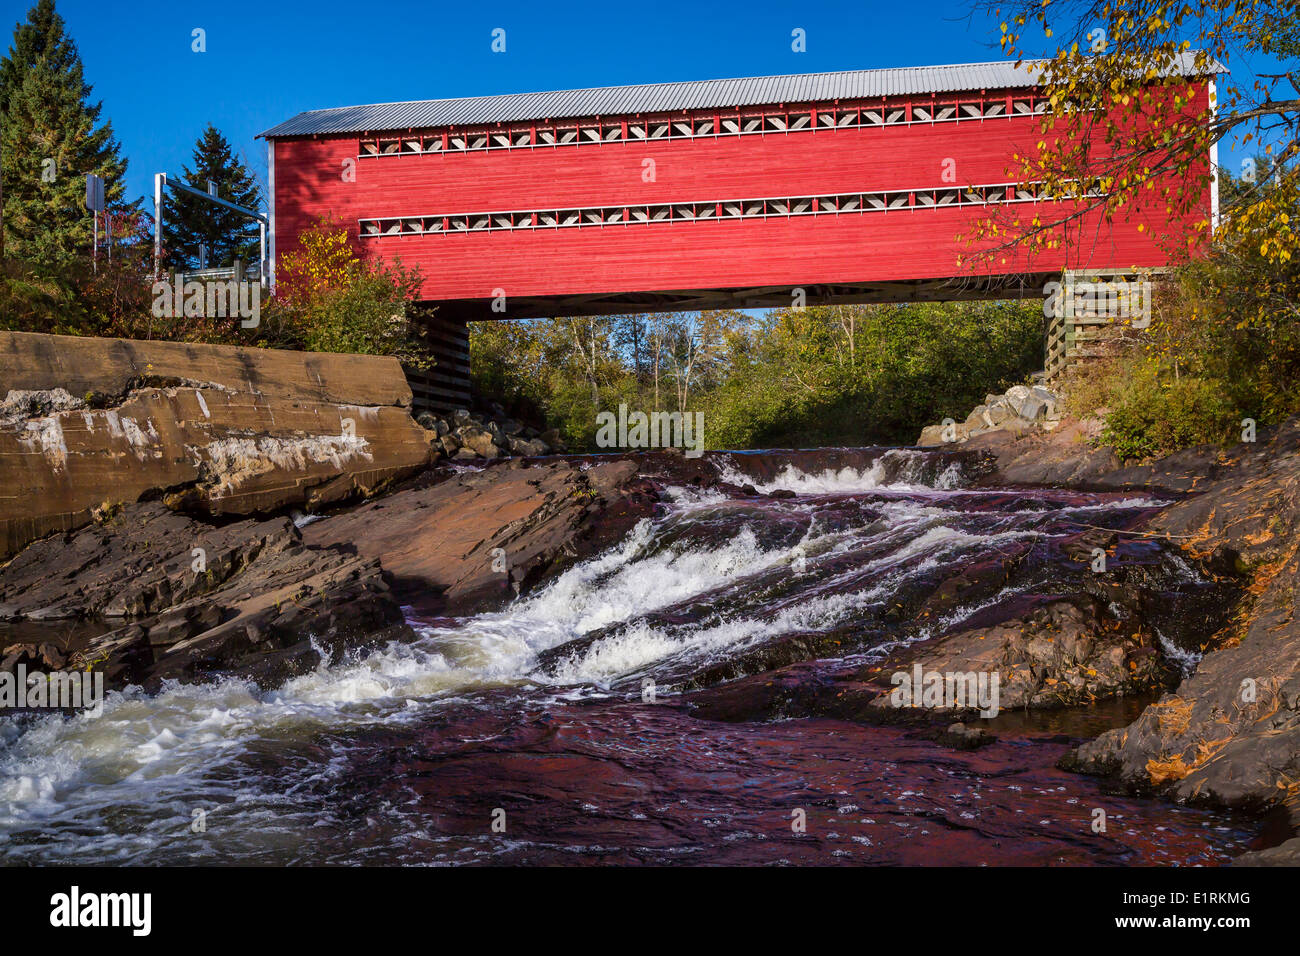 Un pont couvert rouge, de Saint Mathieu avec la couleur des feuilles d'automne près de Shawinigan, Québec, Canada. Banque D'Images